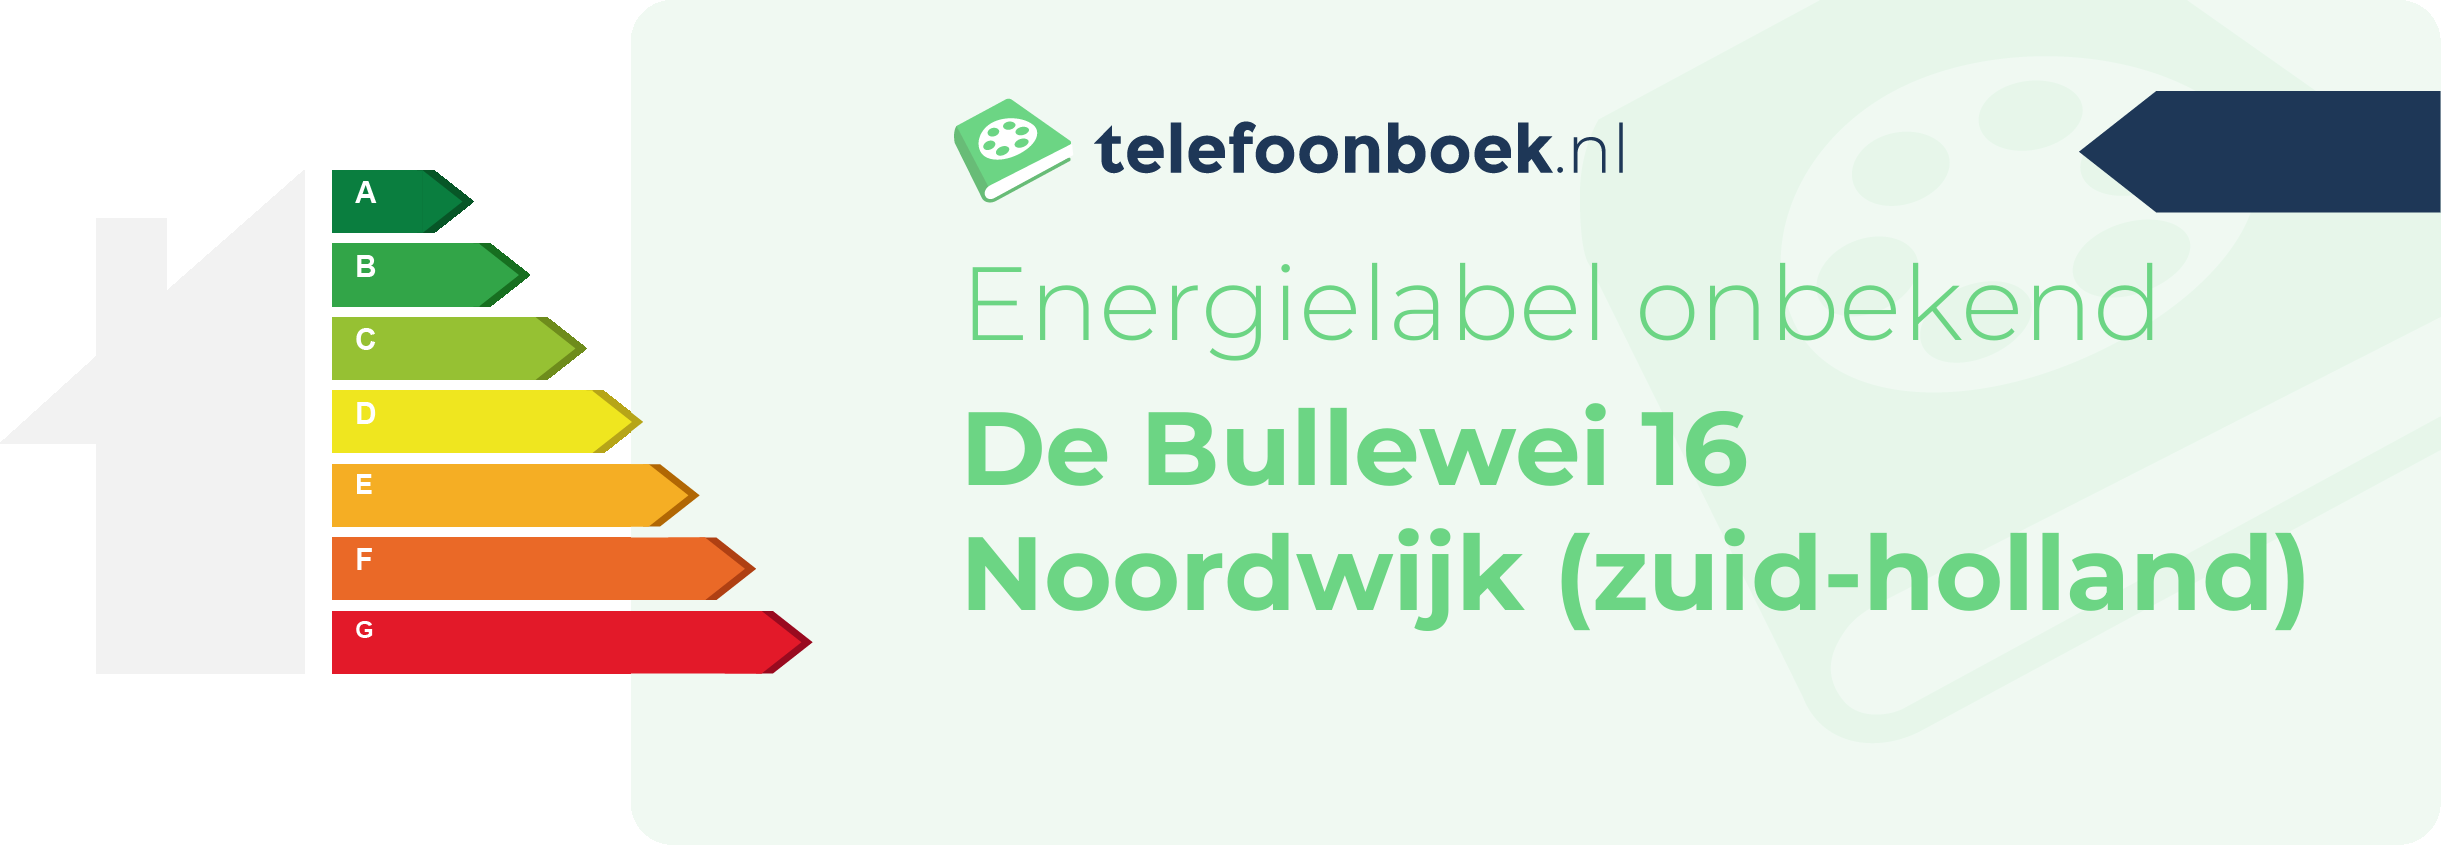 Energielabel De Bullewei 16 Noordwijk (Zuid-Holland)